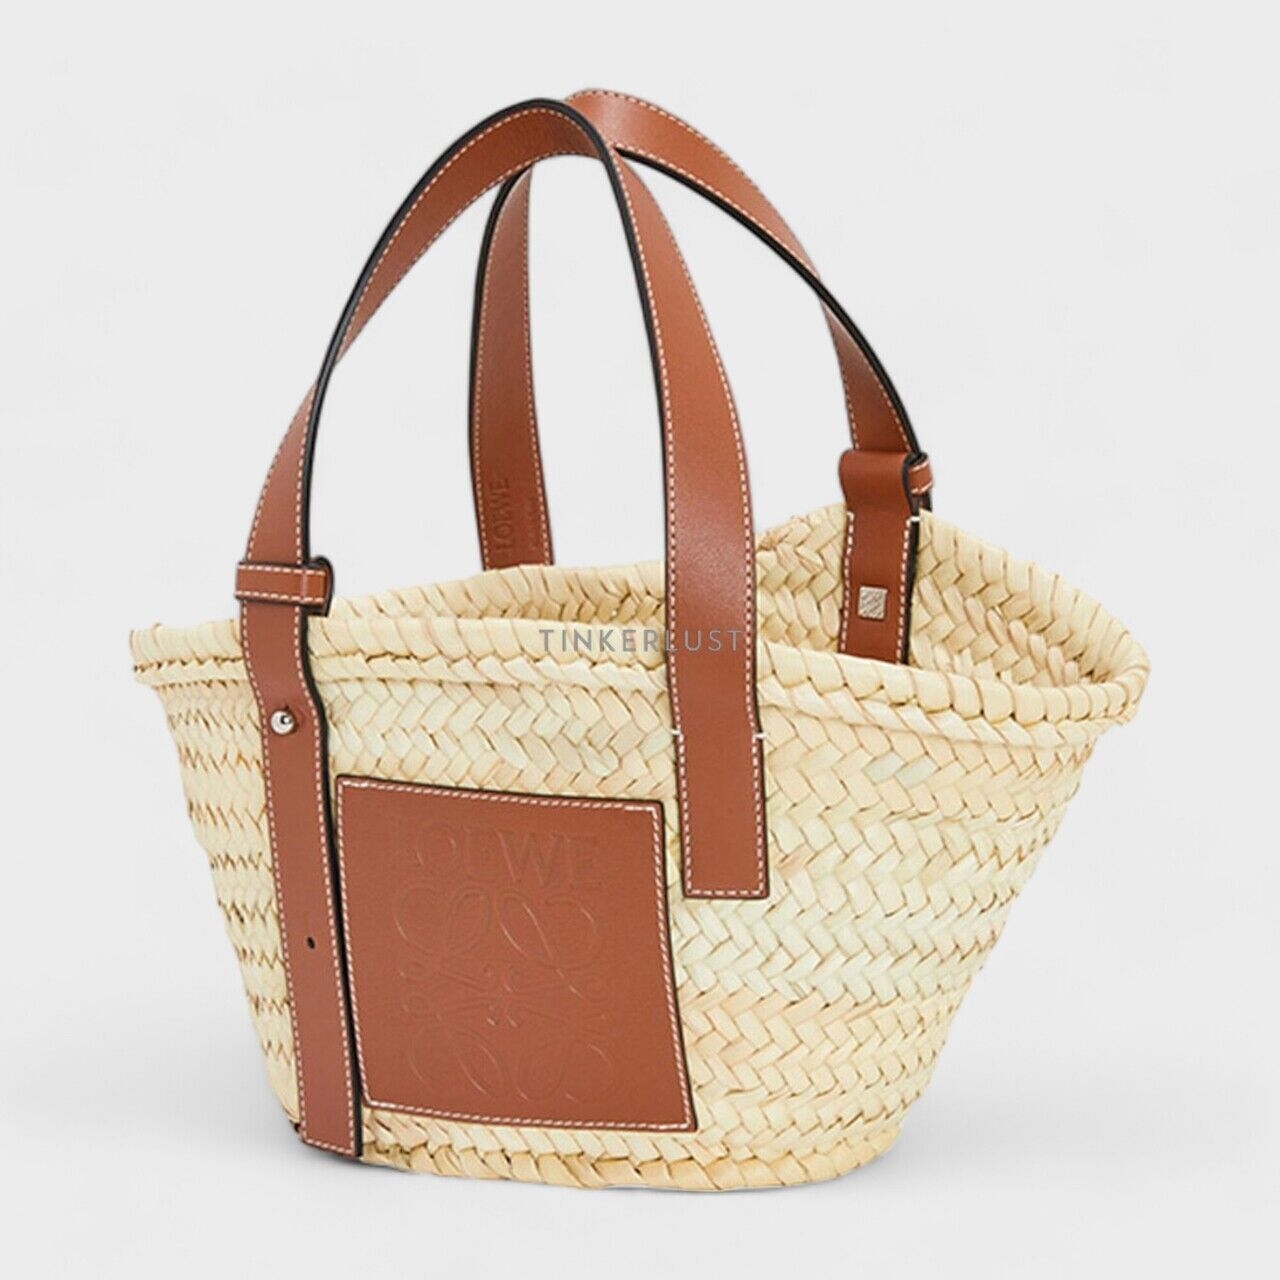 Loewe Small Basket Top Handle Bag in Natural/Tan Handbag